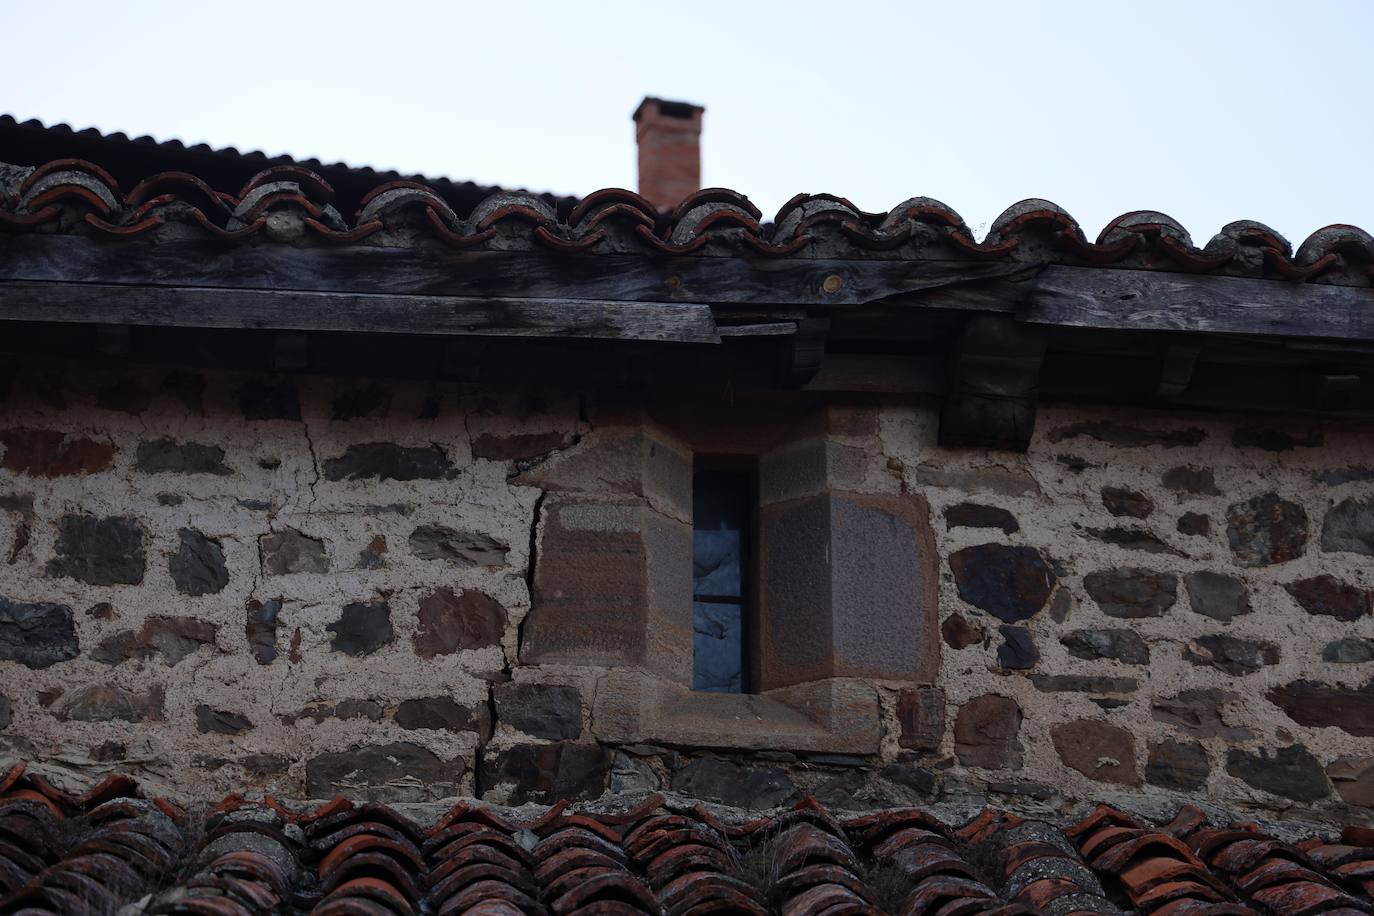 Techos apuntalados, grietas en las paredes, humedades... Los vecinos de Yebas, en Cabezón de Liébana, están indignados por el ruinoso estado de su iglesia y por la falta de respuesta del Obispado